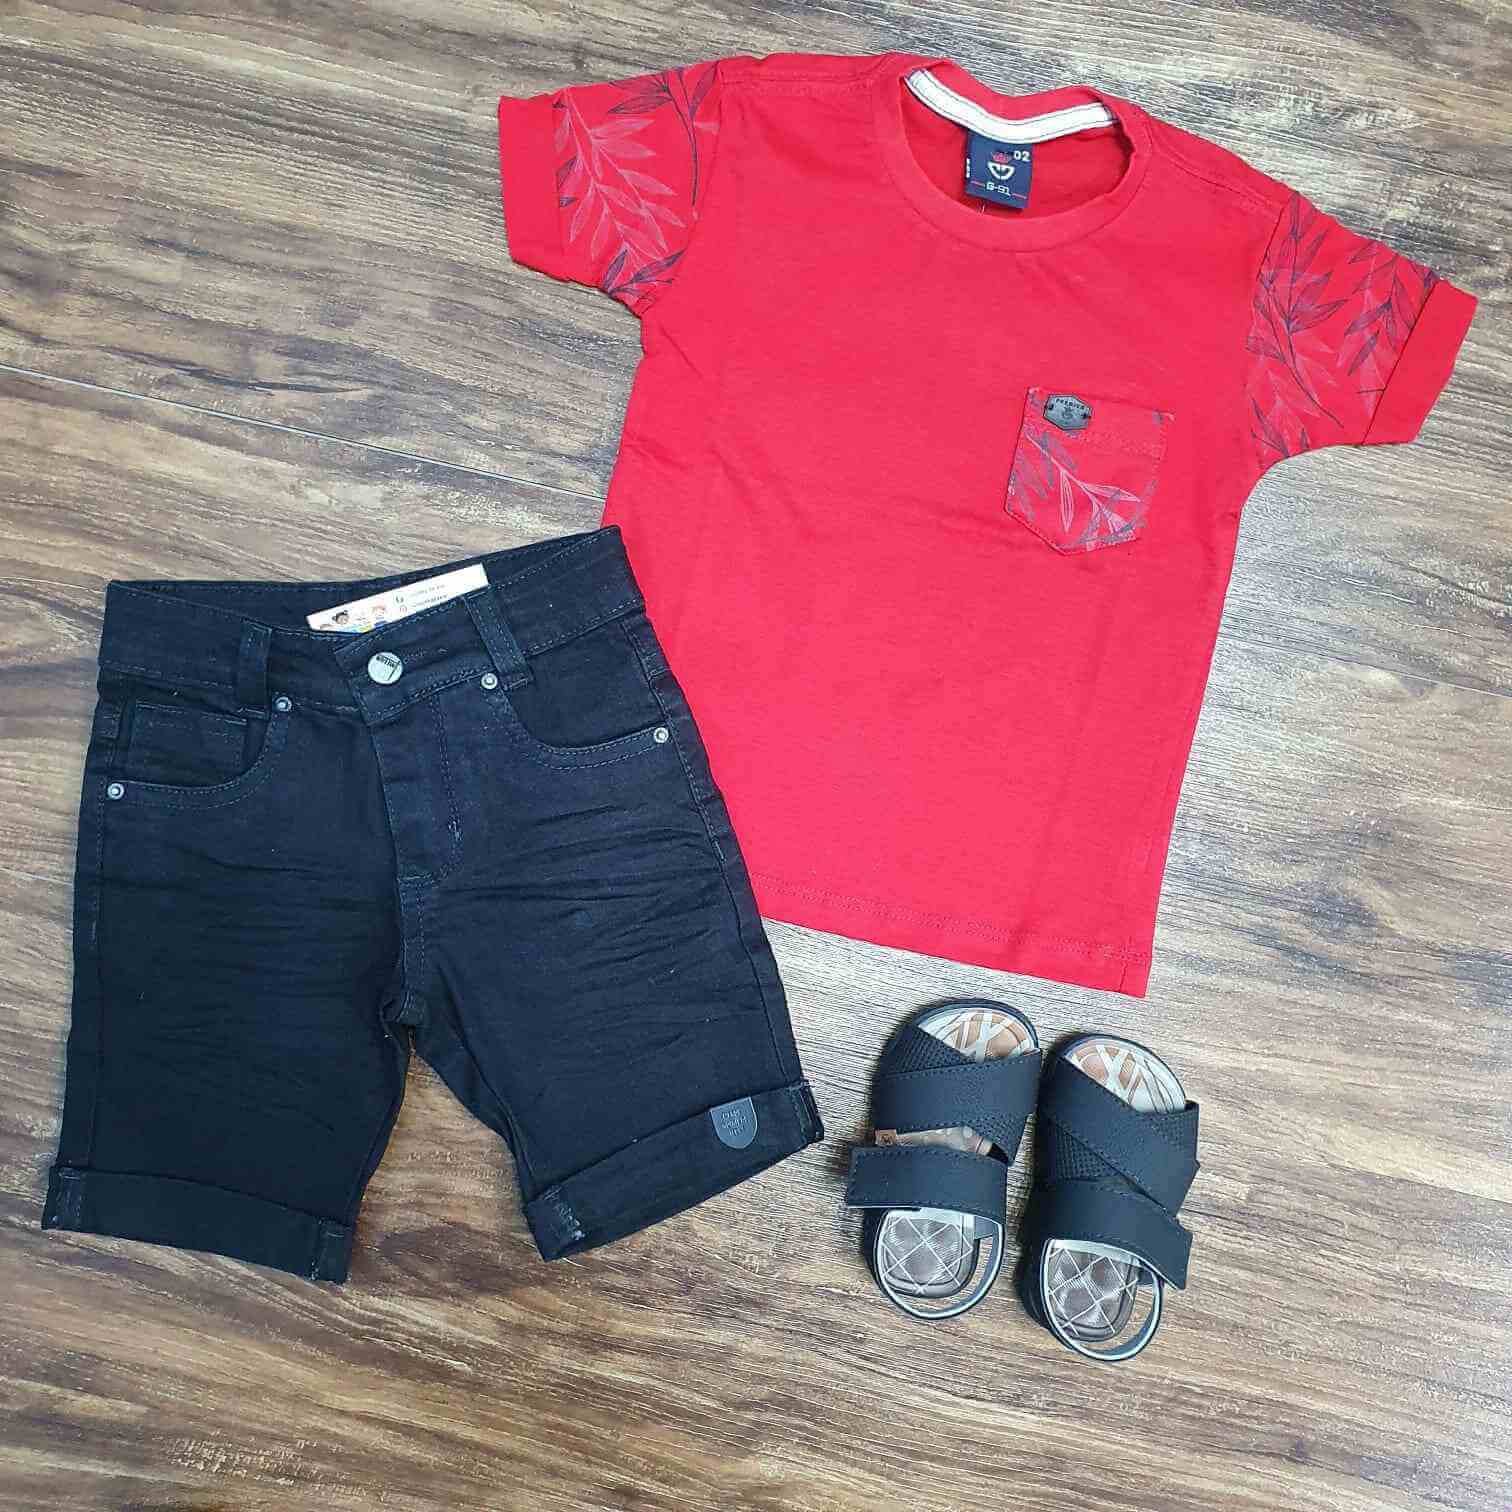 Camisa Vermelha com Bolso e Bermuda Preta Infantil